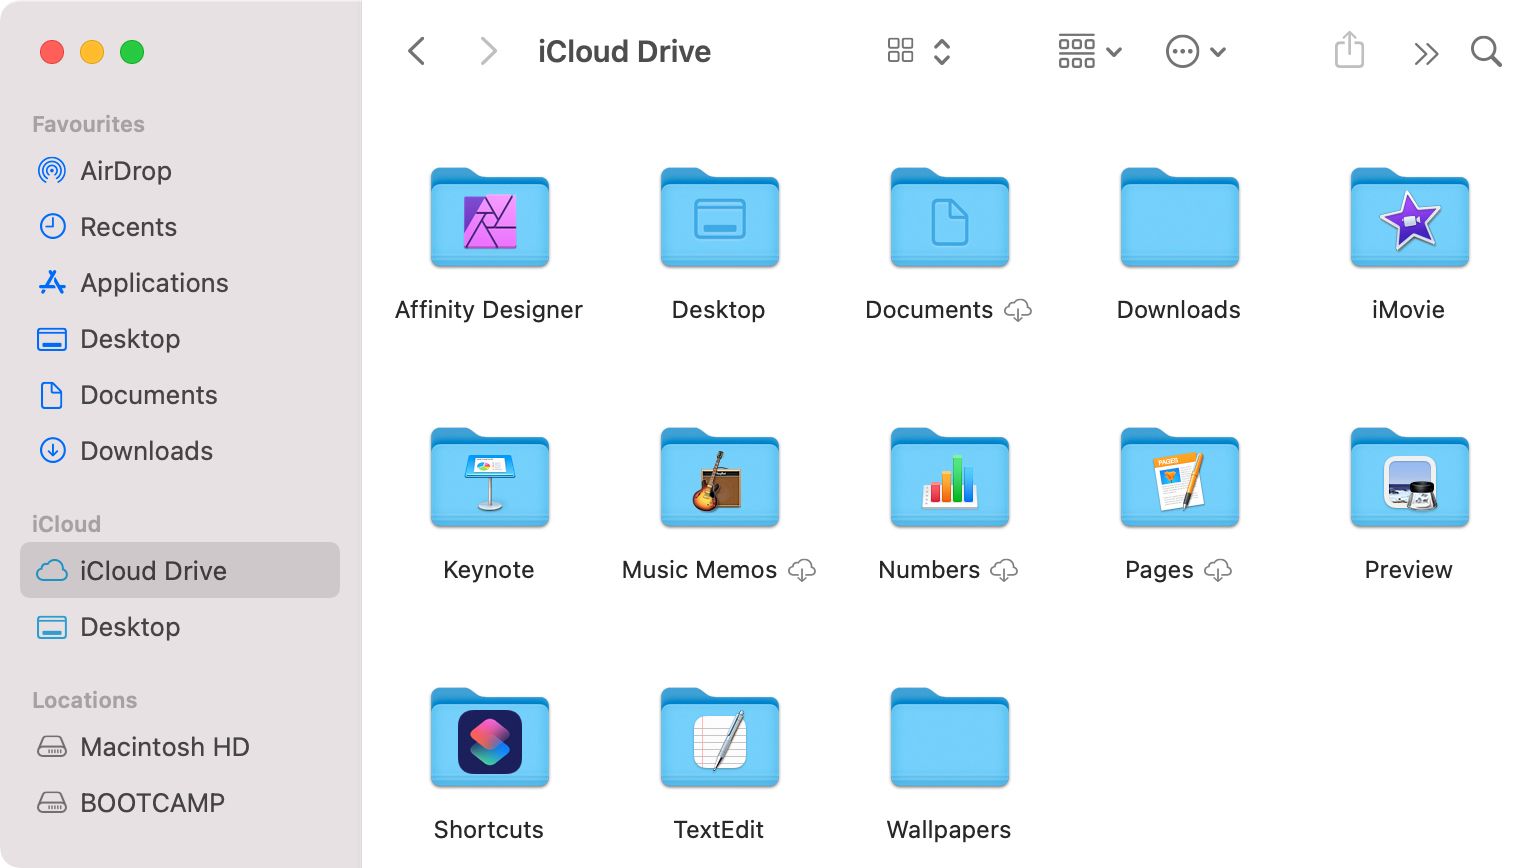 iCloud Drive icons in Finder on Mac - Come accedere e gestire i file di iCloud Drive da qualsiasi dispositivo